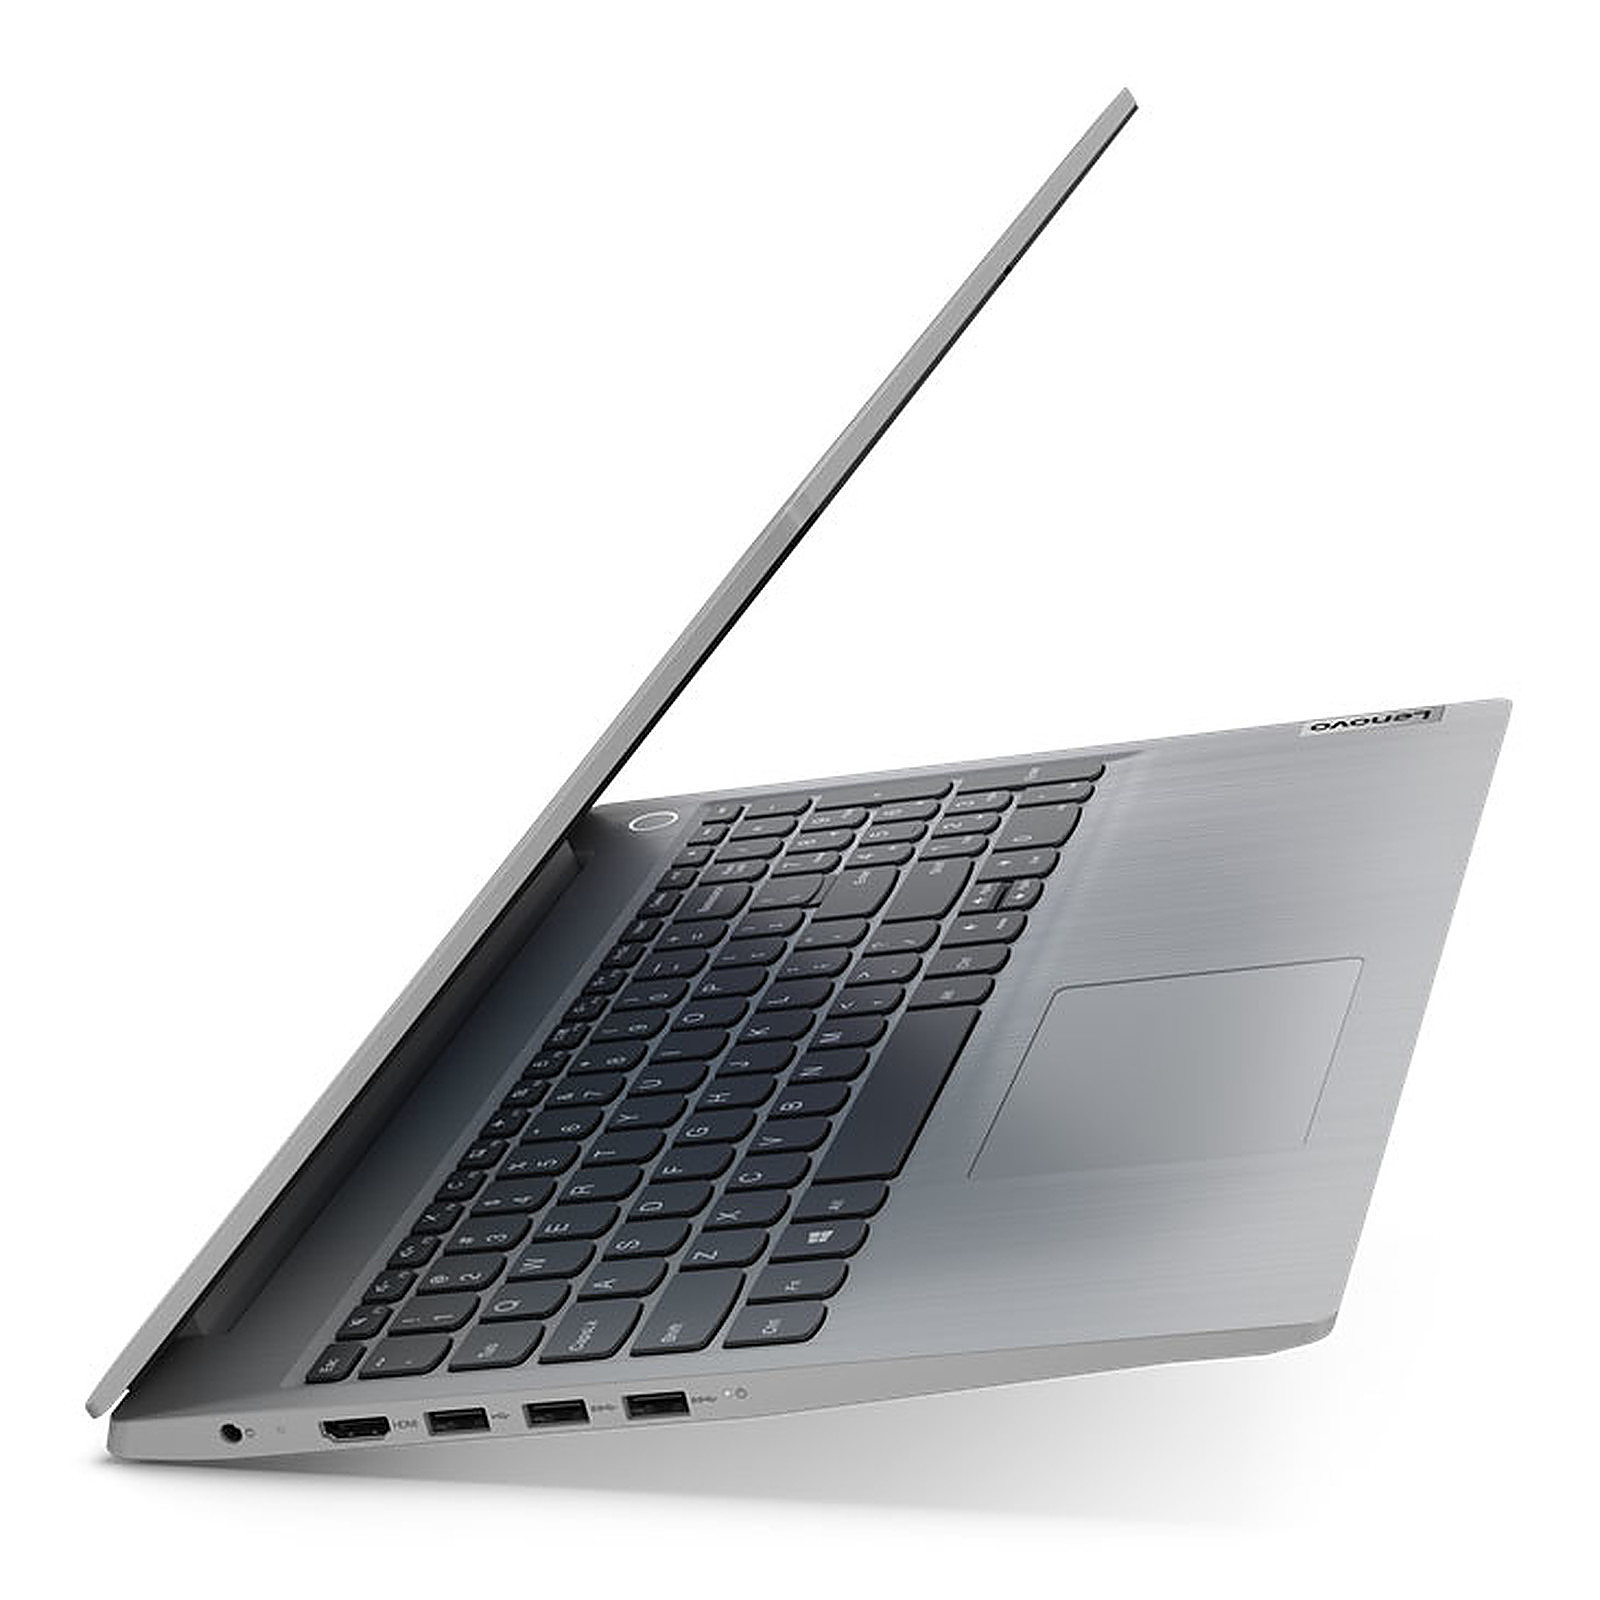 لپ تاپ 15.6 اینچی لنوو مدل Lenovo IdeaPad 3 15IGL05  thumb 1 5